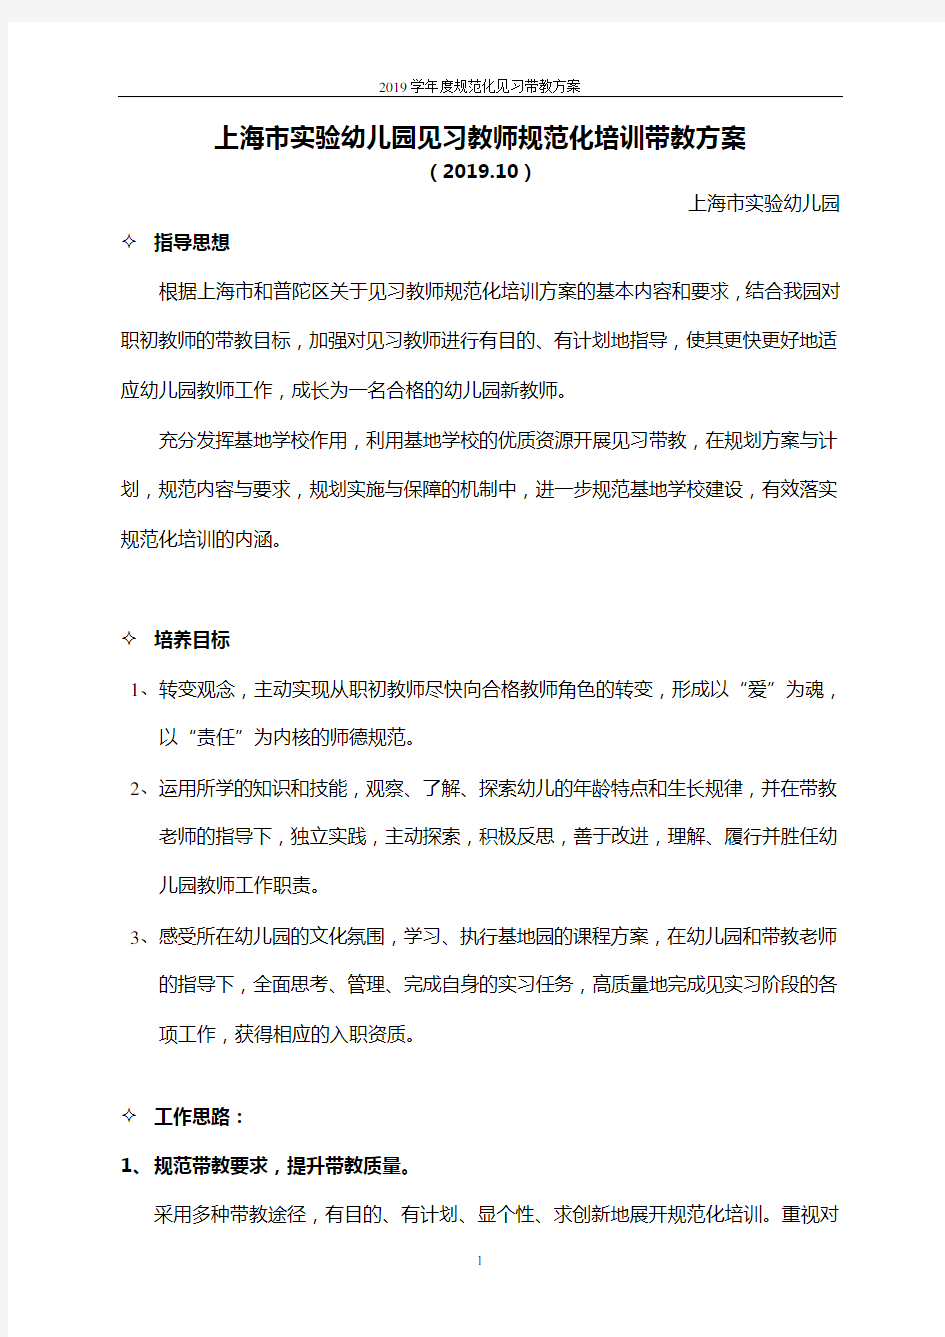 上海市实验幼儿园见习规范化带教方案(2019.10)